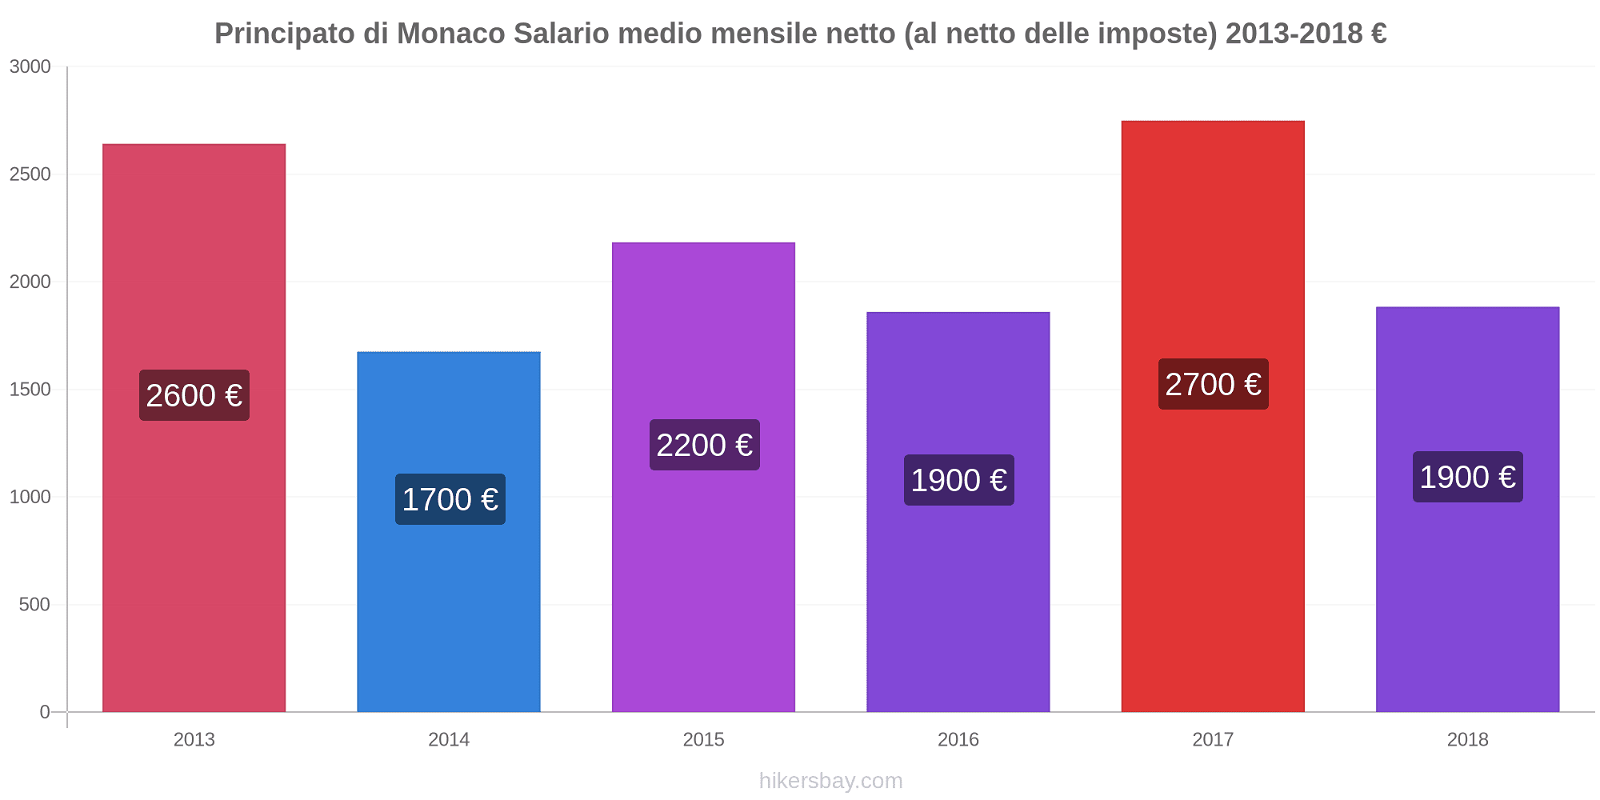 Principato di Monaco variazioni di prezzo Salario medio mensile netto (al netto delle imposte) hikersbay.com